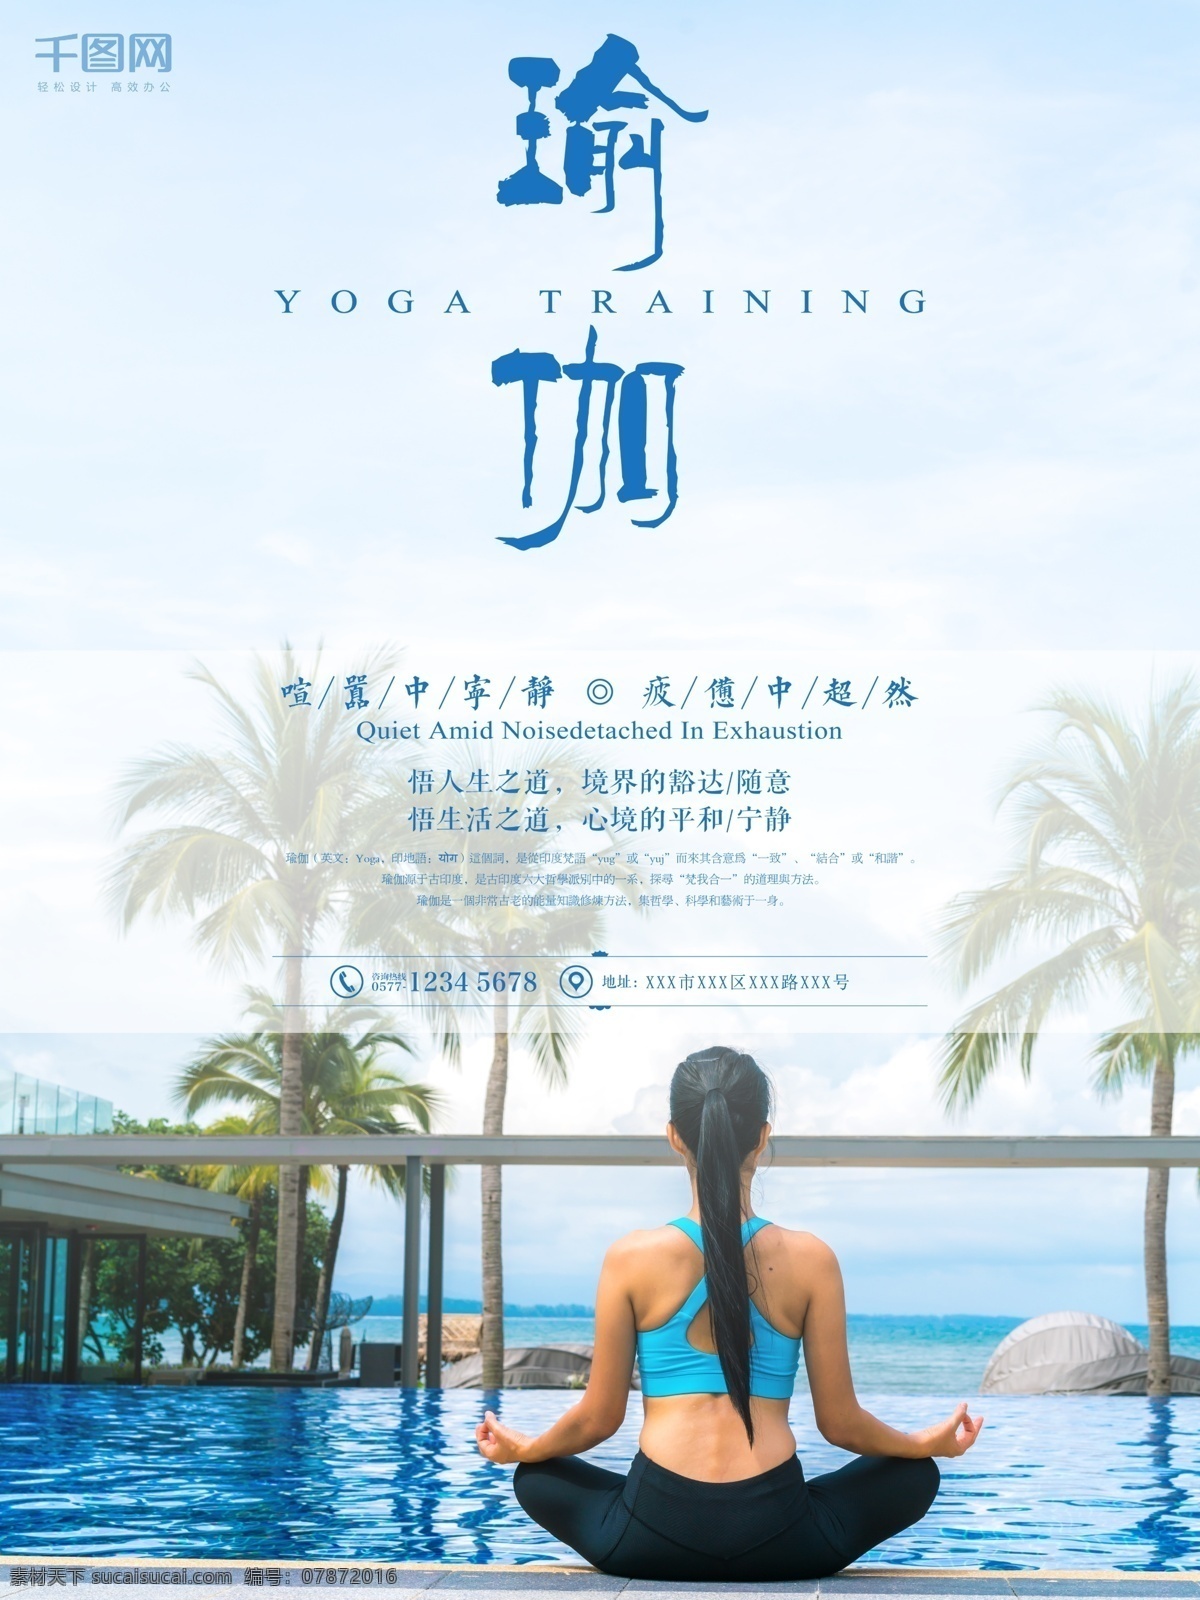 瑜伽 健身 养生 运动 宣传海报 健身养生 运动宣传 海报 暑期招生 培训班招人 瑜伽班 女子打坐 yoga训练 蓝色唯美 海边风景背景 椰树养眼 清新自然